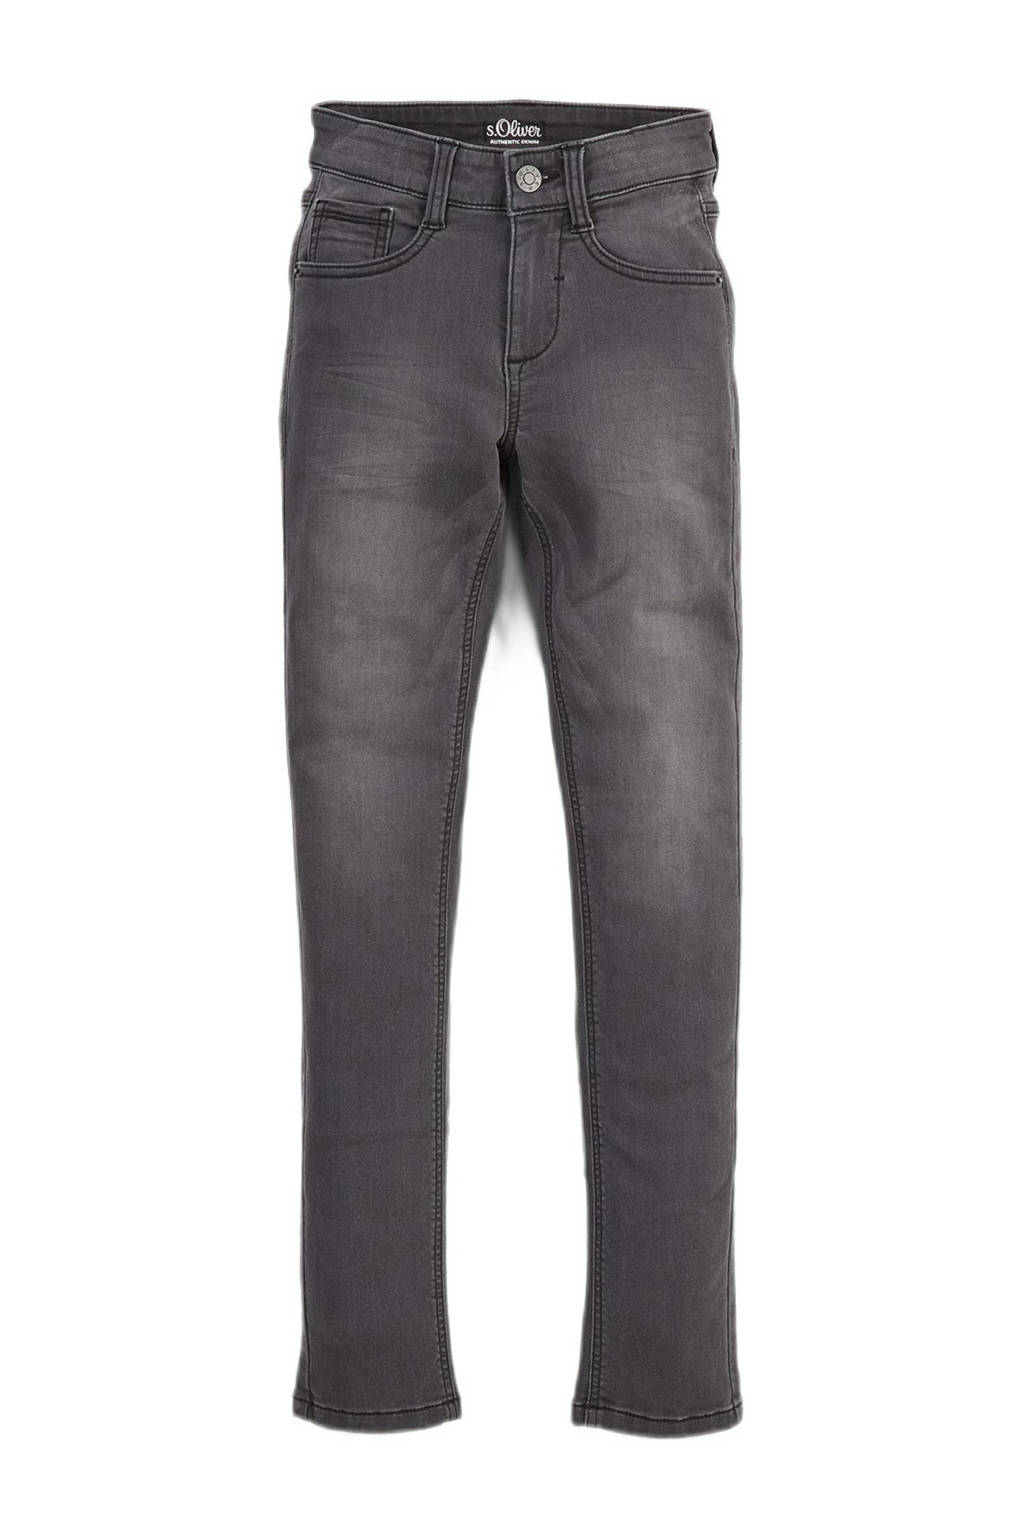 s.Oliver slim fit jeans grijs stonewashed, Grijs stonewashed